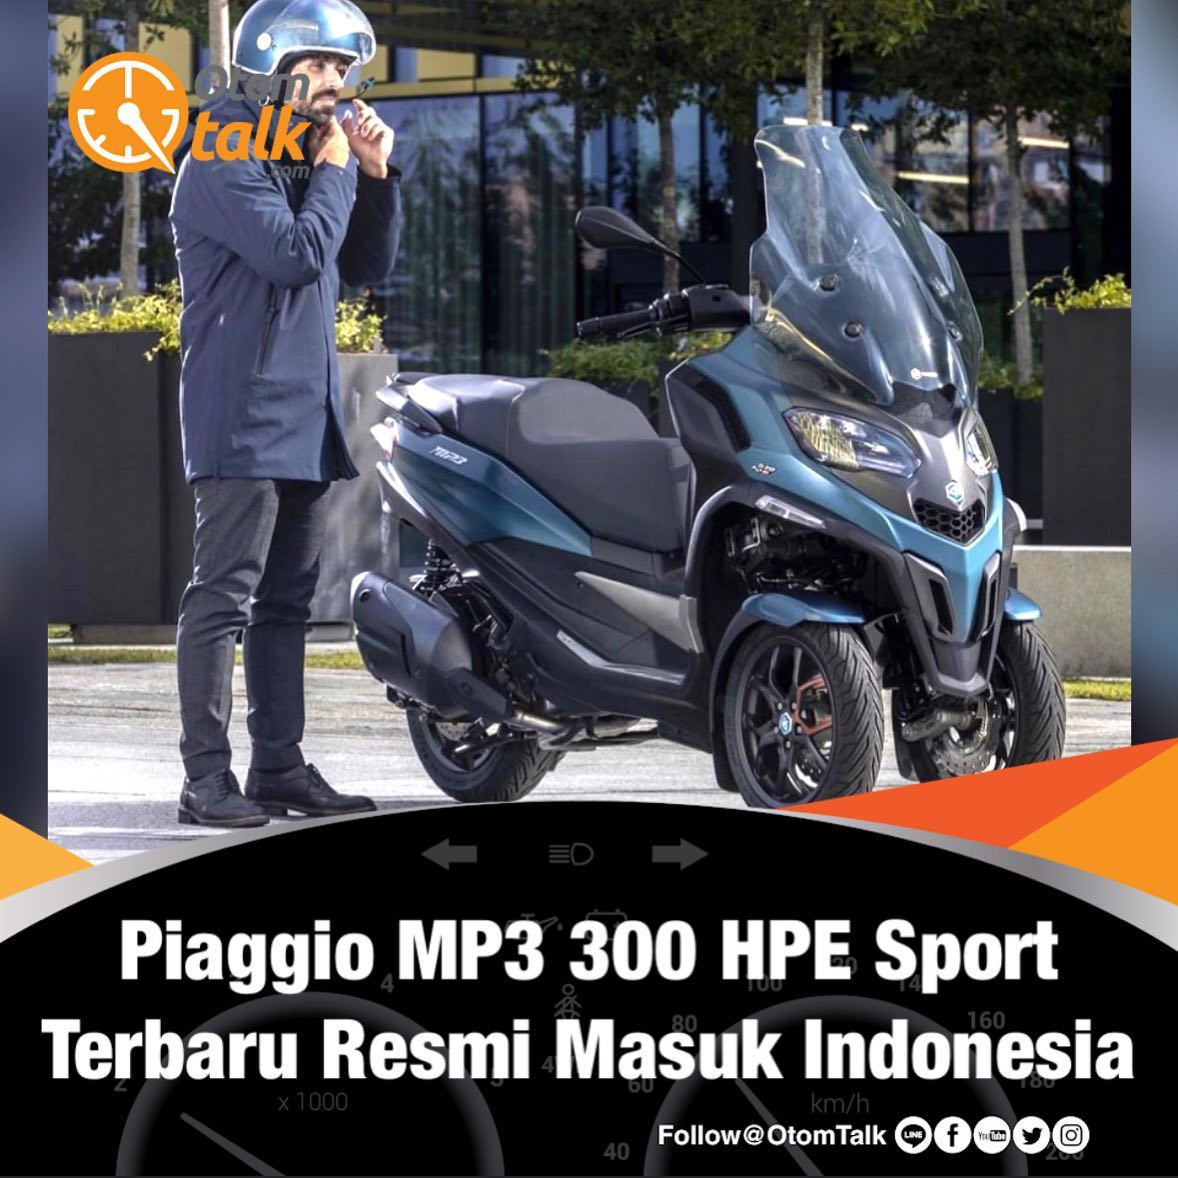 Piaggio MP3 300 HPE Sport terbaru akhirnya resmi masuk Indonesia.

Motor roda tiga ini pertama kali masuk Indonesia pada 2012 melalui Piaggio MP3 125 Yourban. 

Kendaraan ini memiliki keunikan yakni terdapat roda depan ganda yang diklaim lebih menyenangkan dan aman di berbagai macam kondisi jalan. Kemampuan pengereman juga menjadi lebih optimal.

“Piaggio MP3 300 hpe Sport merupakan komitmen berkelanjutan PT Piaggio Indonesia dalam menghadirkan solusi mobilitas perkotaan yang cerdas. Kami senang dapat memberikan pengalaman berkendara terbaik dengan cara paling nyaman, modis dan canggih,” kata Marco Noto La Diega, Managing Director & Country CEO PT Piaggio Indonesia.

Piaggio MP3 menggunakan mesin 300 cc satu silinder 4 valve berpendingin cairan. Jantung pacu ini mampu menghadirkan output sebesar 25.8 hp pada 7.750 rpm dan torsi maksimum 26.1 Nm pada 6.250 rpm. 

Motor ini hadir dalam dua pilihan warna yakni Blue Oxygen dan Argento Cometa. Piaggio MP3 300 HPE Sport

Jangan kelewatan karena unit terbatas. Segera hubungi dealer resmi Piaggio di kota anda.

Hubungi @vesparkindo untuk dealer resmi Sumut, Aceh, Pekanbaru
061-456-5454 WA 0815-21-595959